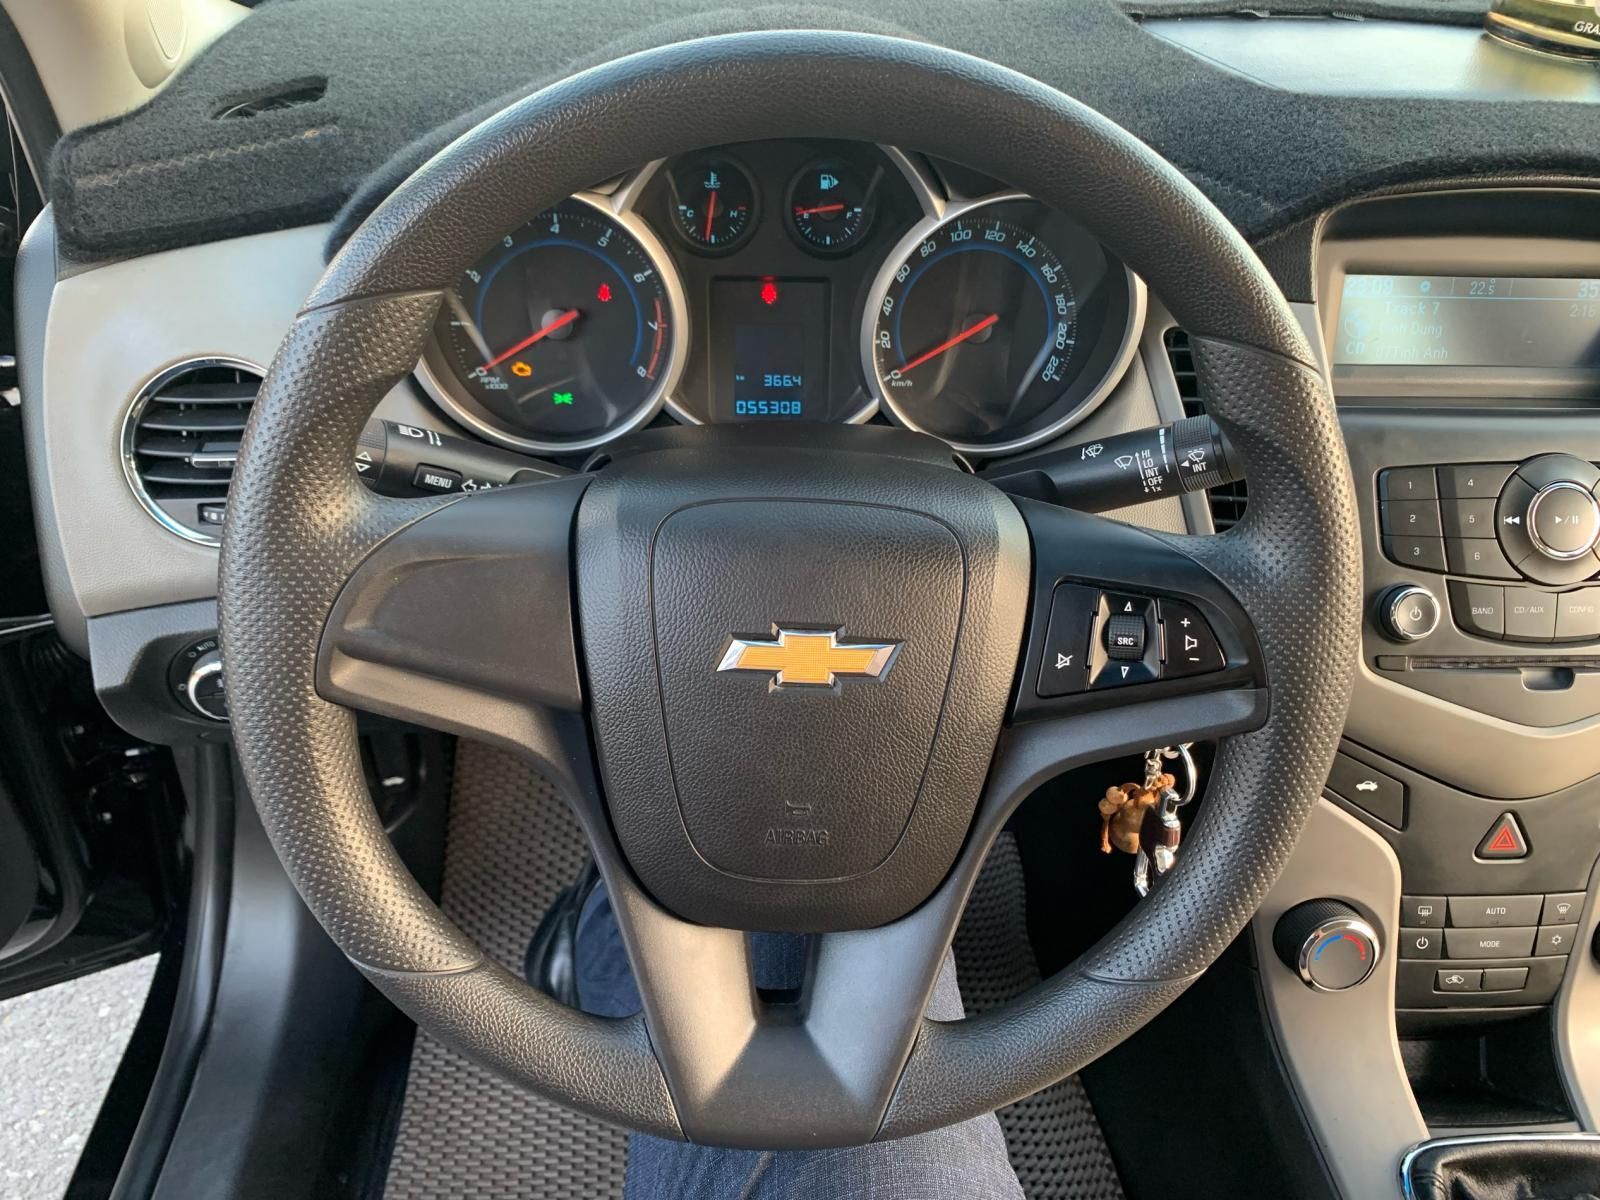 Chevrolet Cruze 2016 - Đăng kí tư nhân sử dụng, odo hơn 5v km, giá 310tr